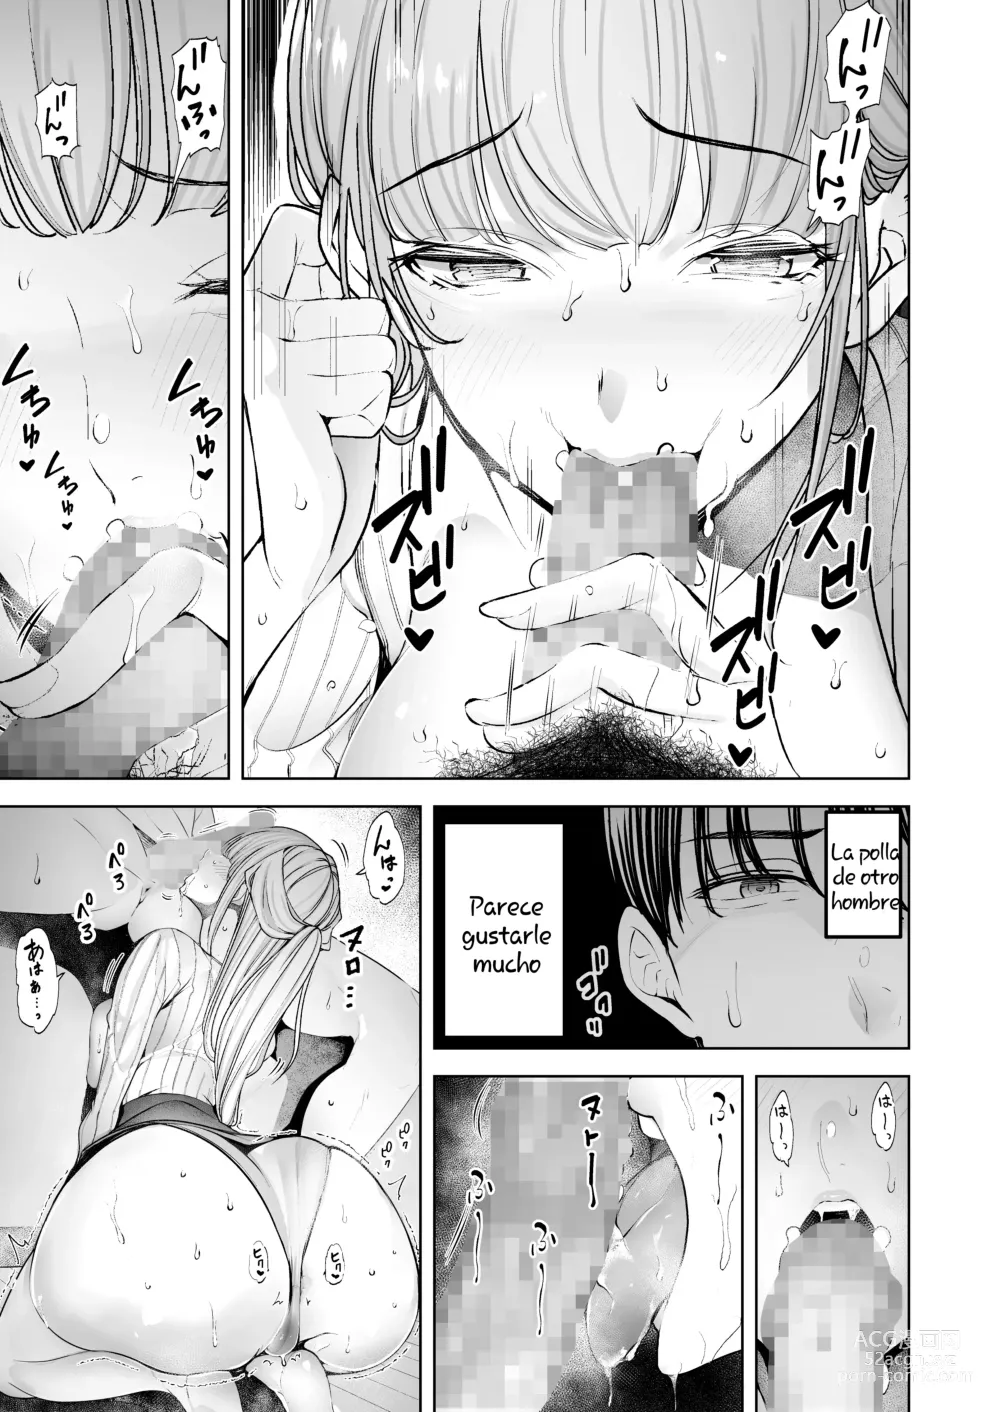 Page 9 of doujinshi Seguí viendo cómo me ponían los cuernos mi esposa y la hacían correrse una y otra vez. completa